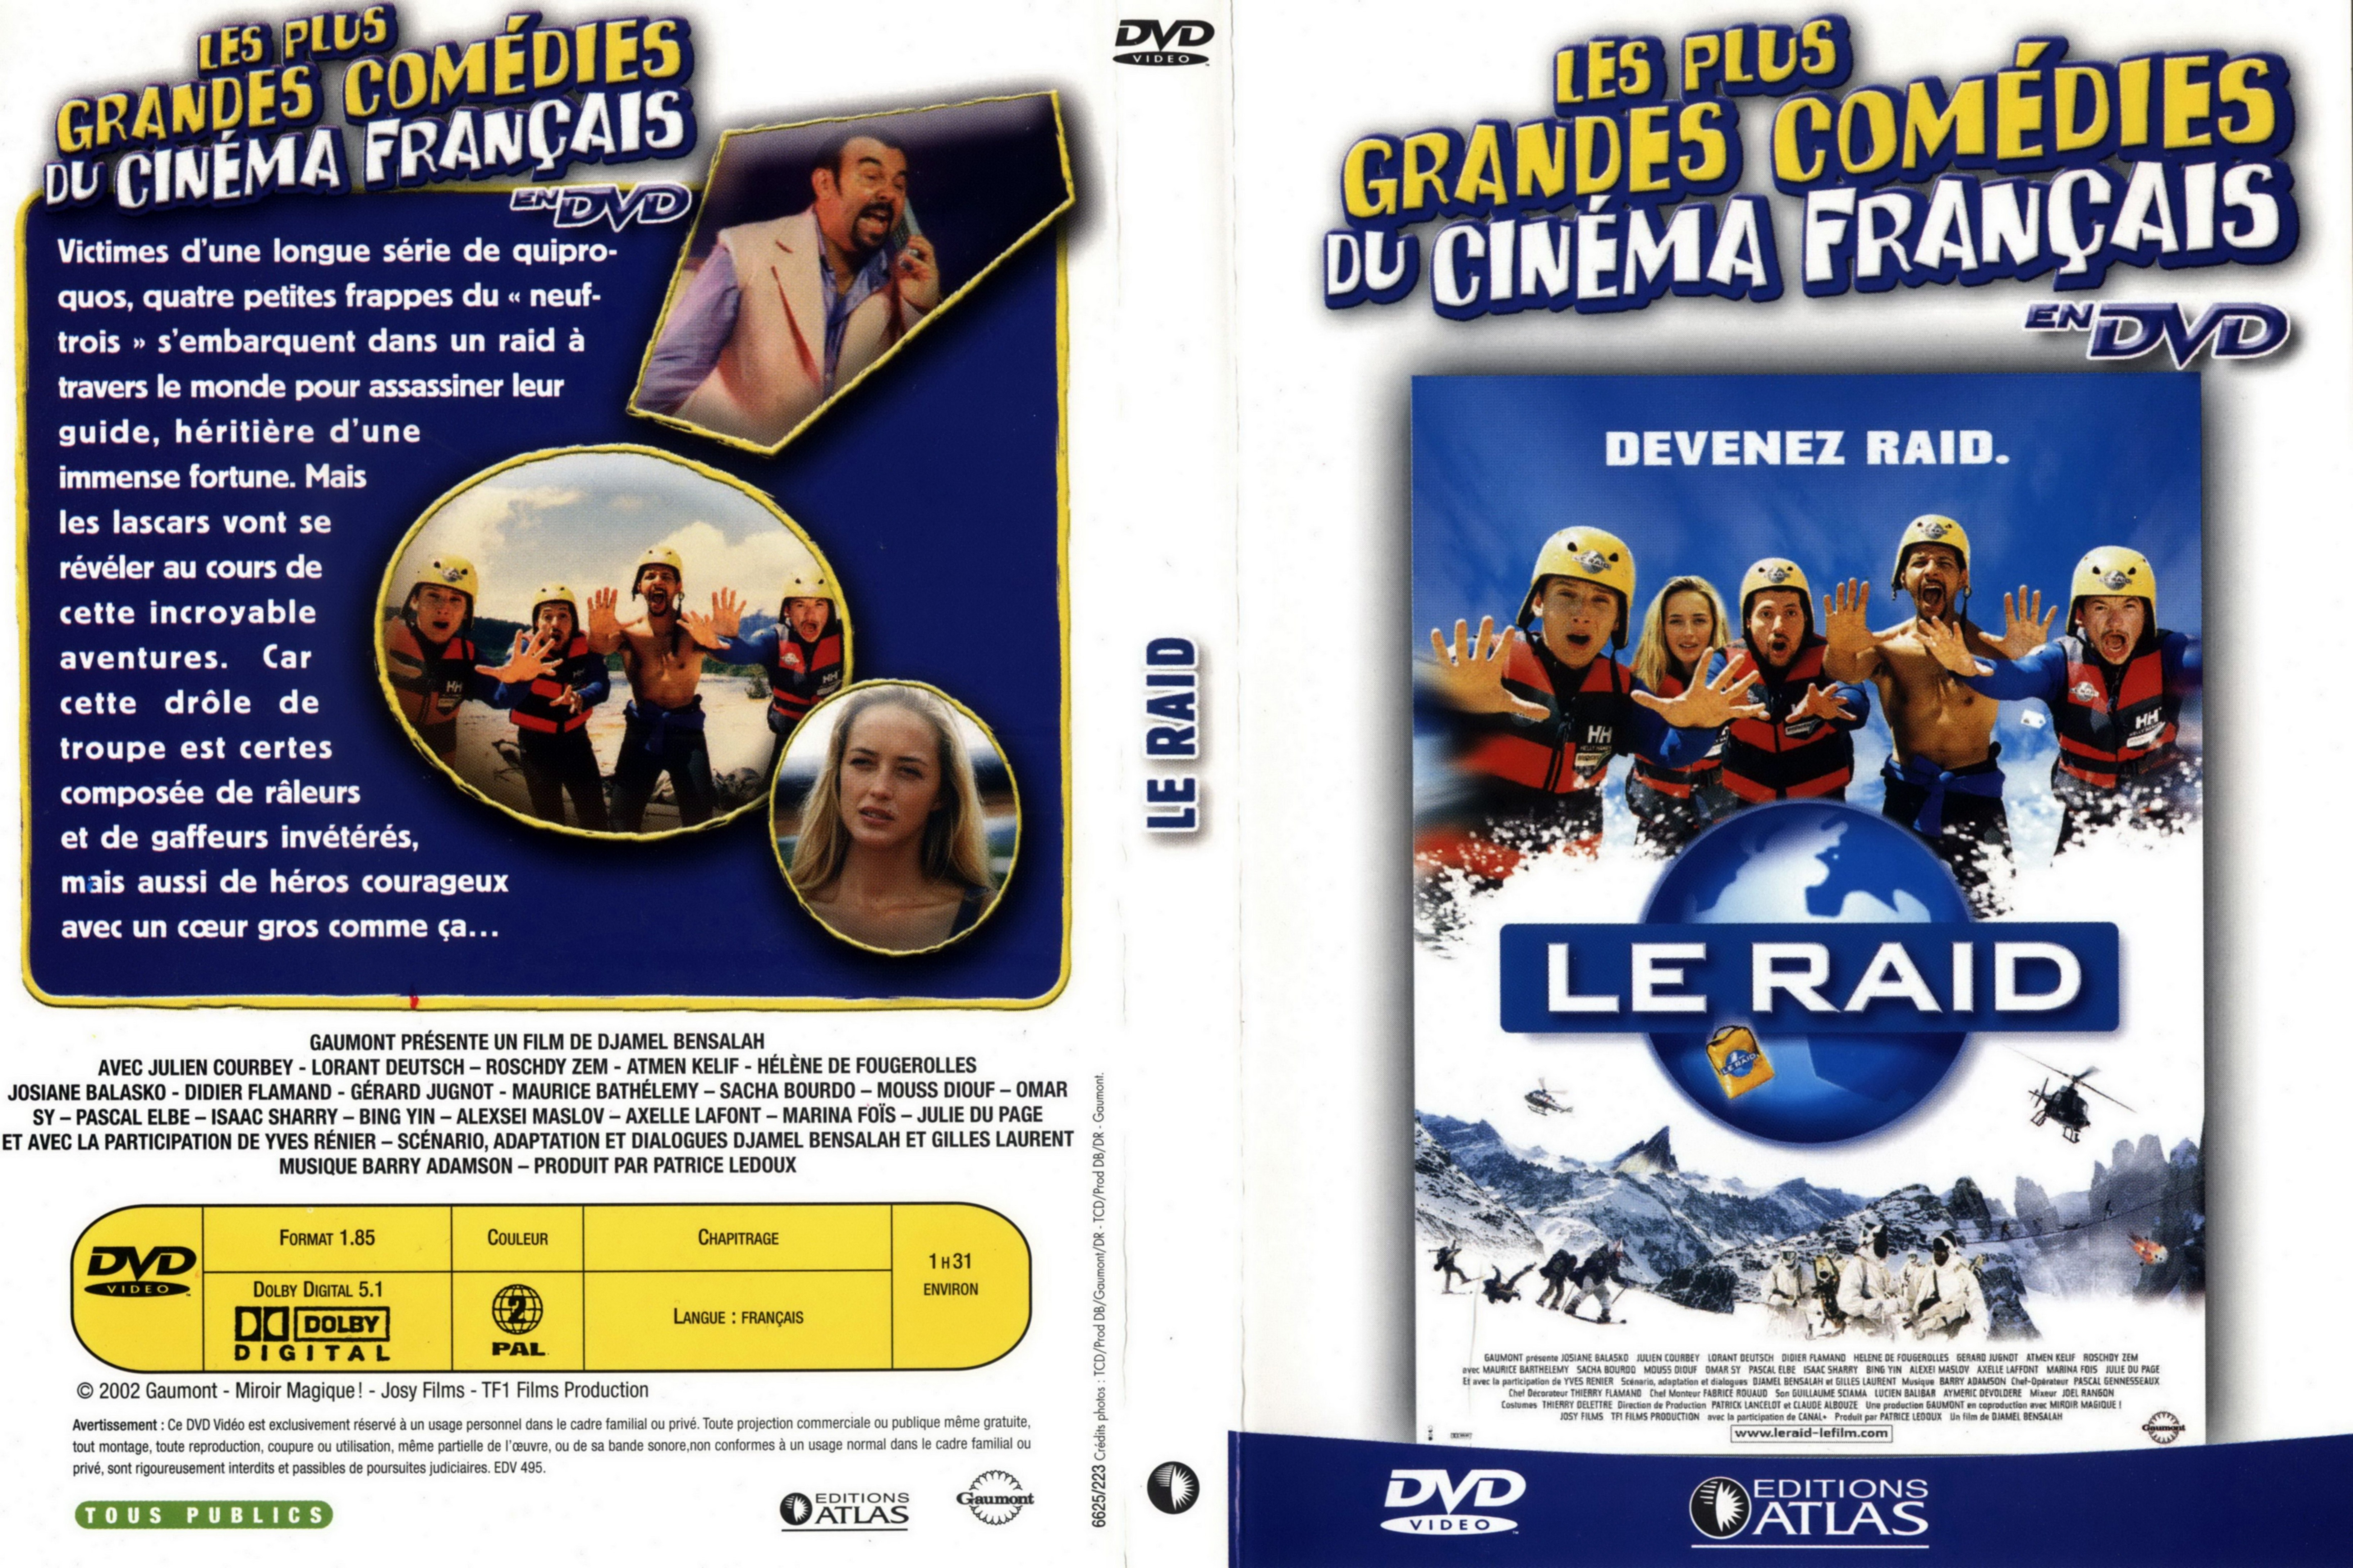 Jaquette DVD Le raid v3